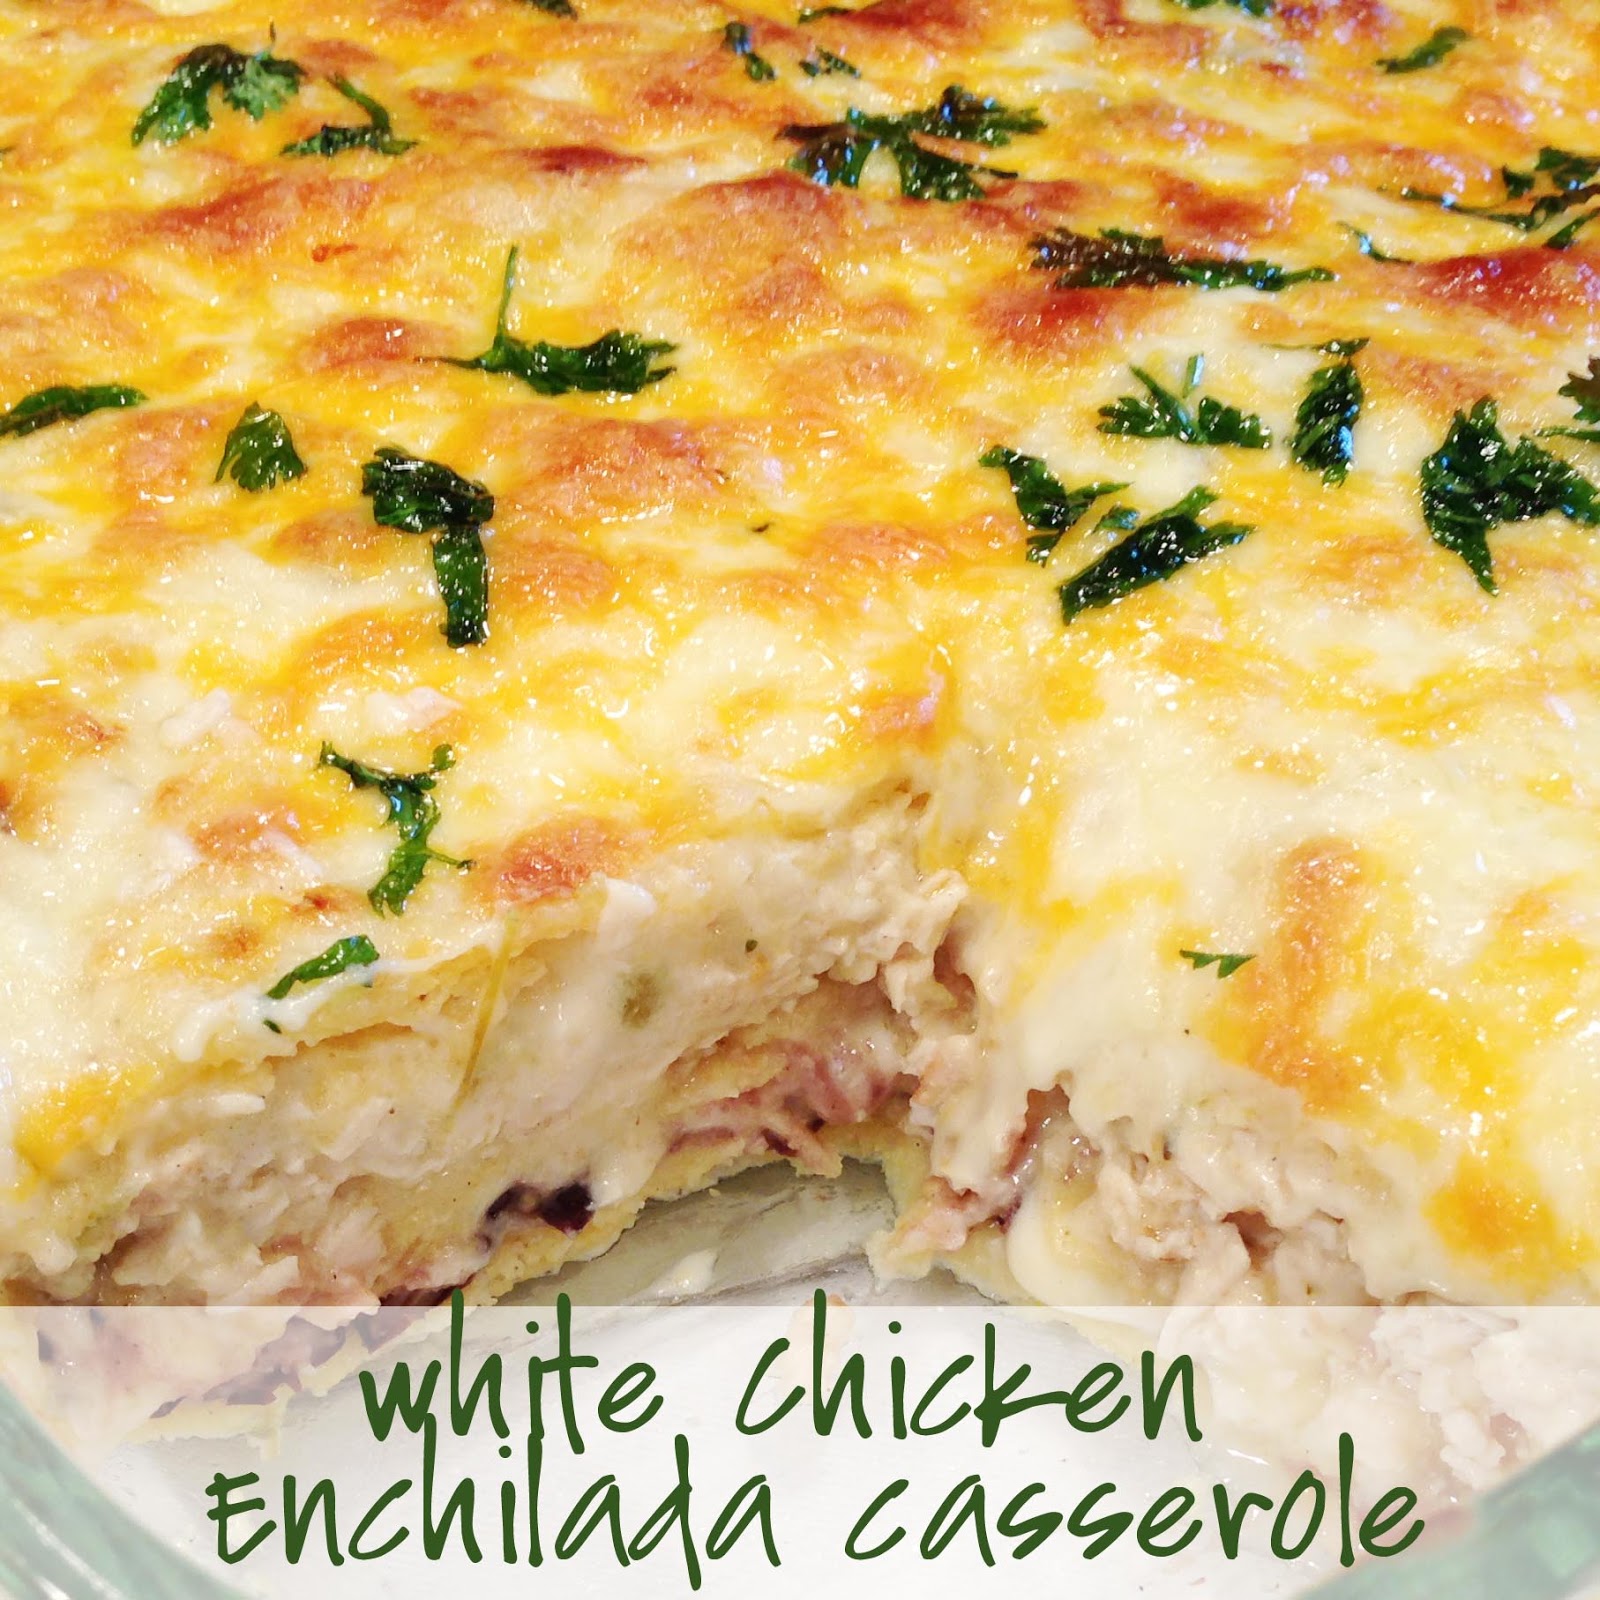 PaperDaisyKitchen: White Chicken Enchilada Casserole